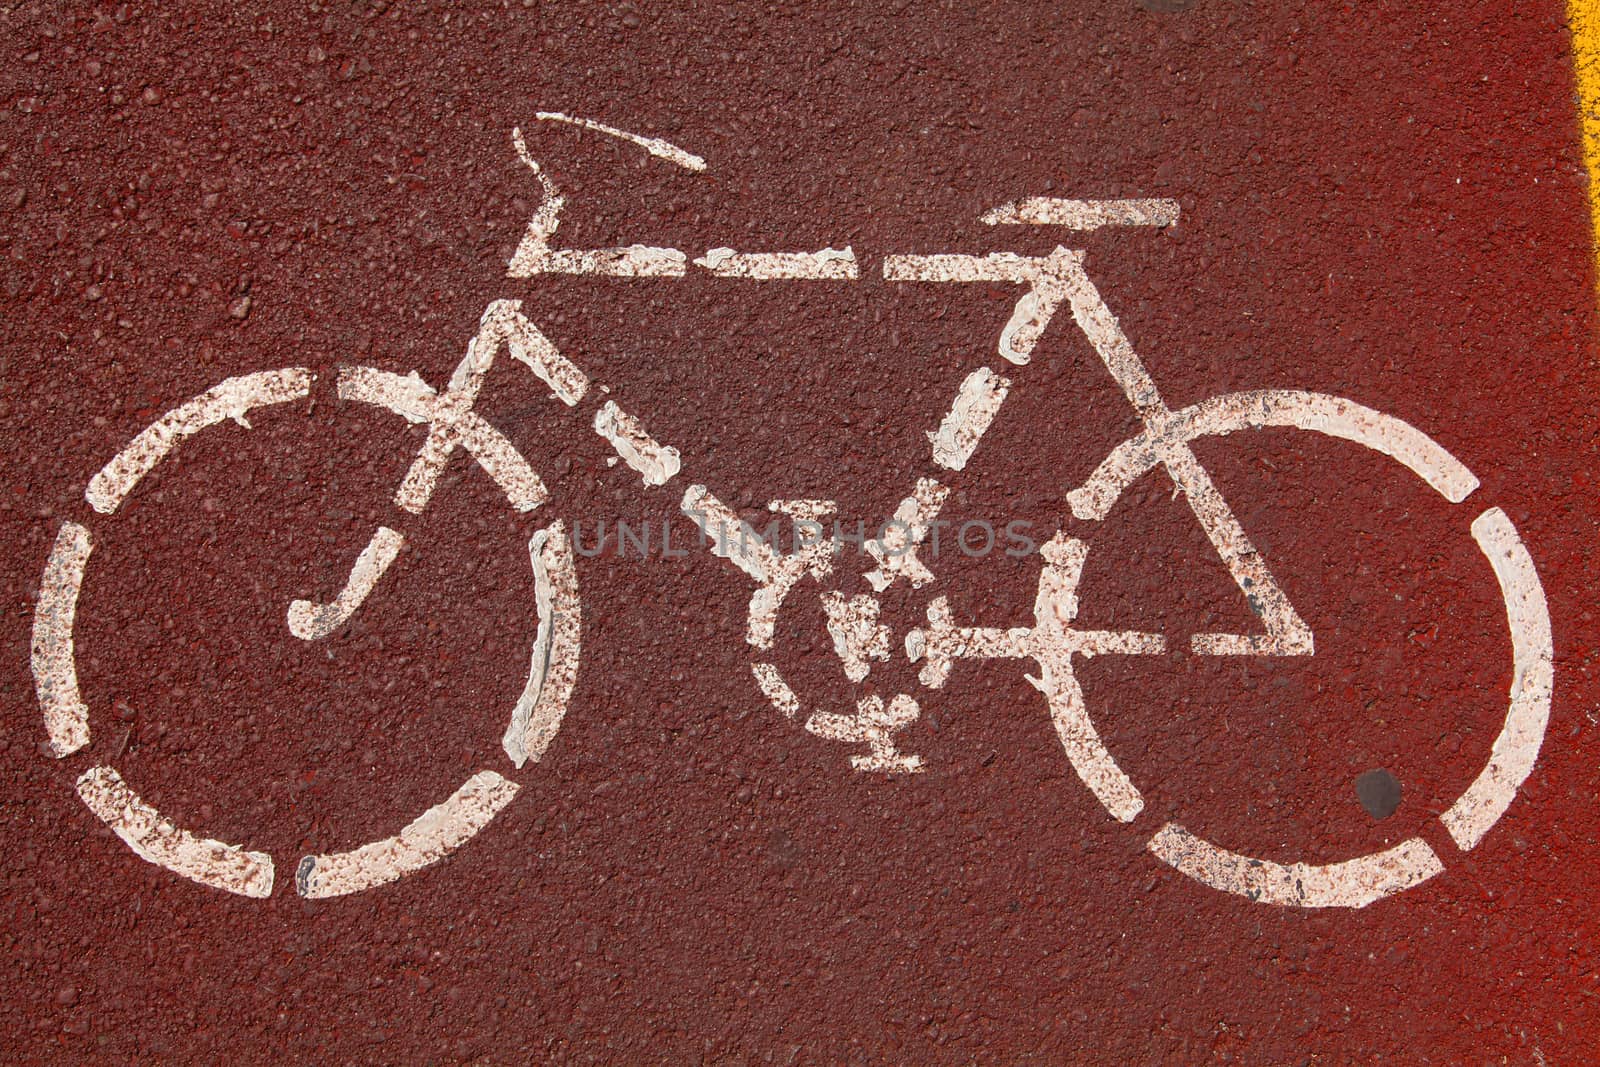 Bike lane by Portokalis